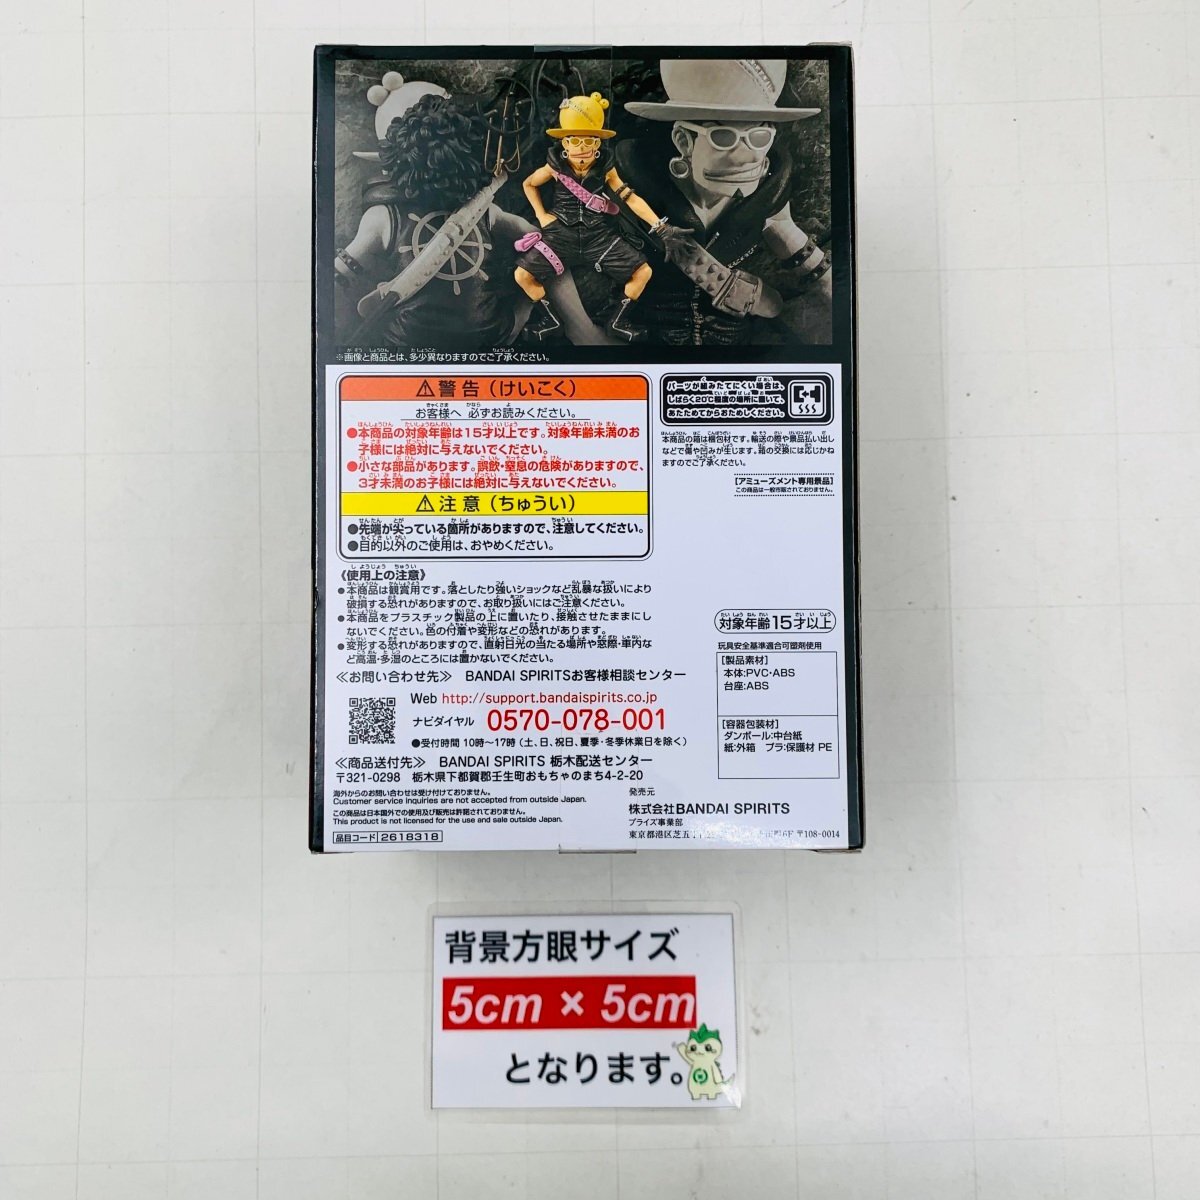 新品未開封 DXF THE GRANDLINE MEN vol.7 ワンピース FILM RED ウソップ フィギュア_画像2